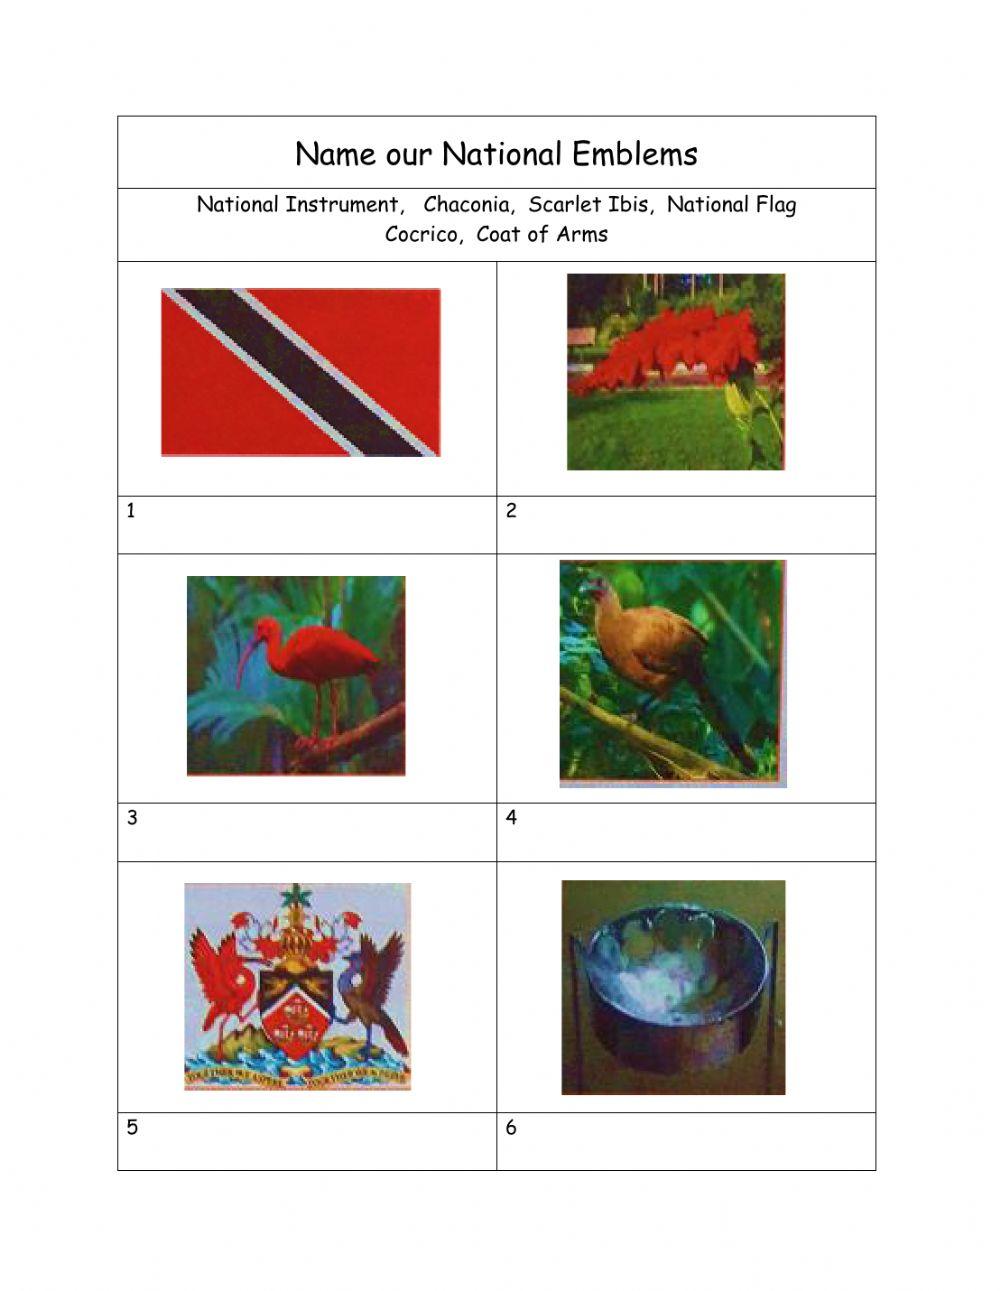 Emblems of Trinidad & Tobago